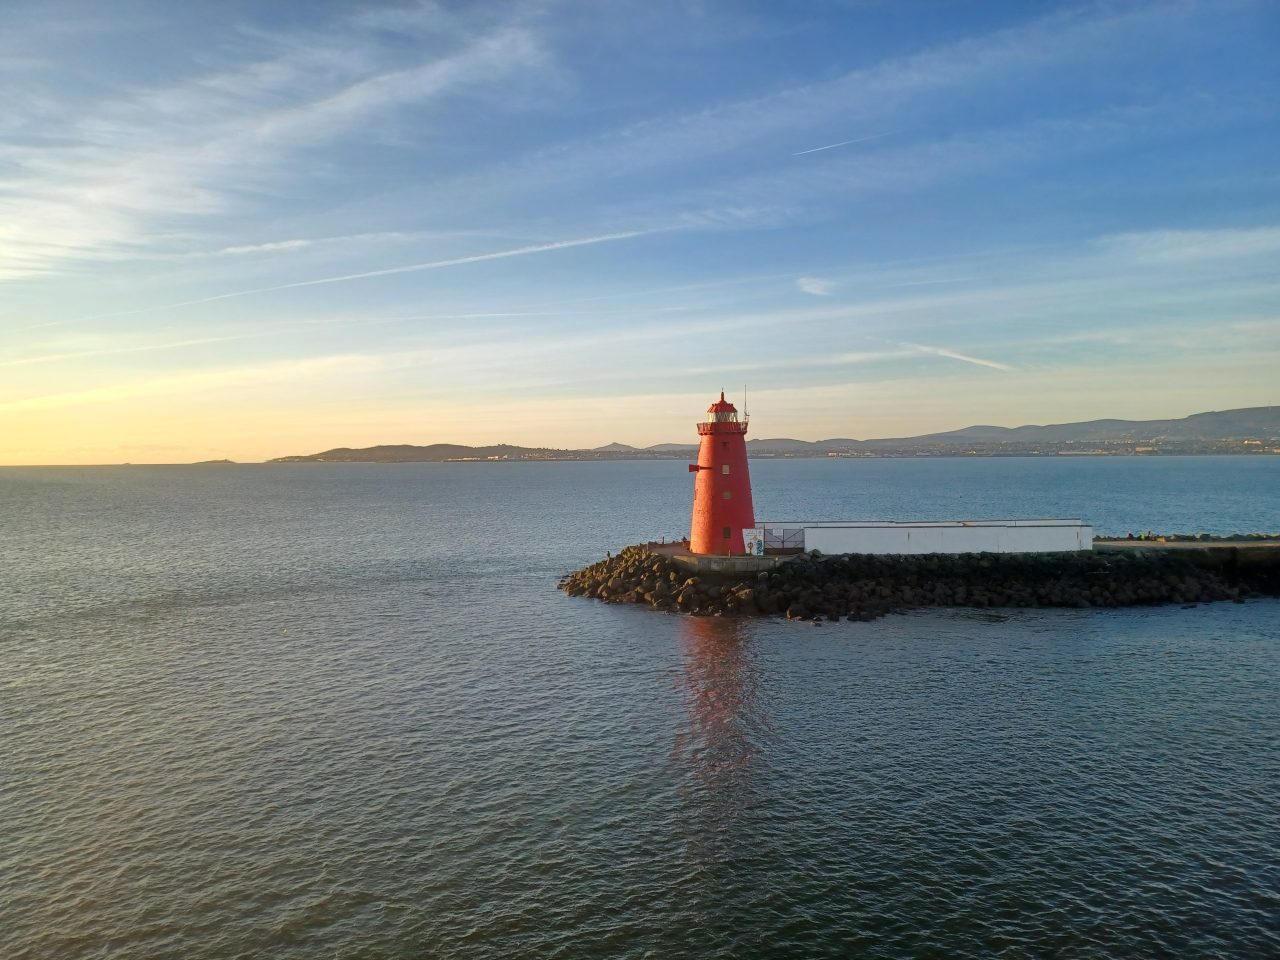 Poolbeg Lighthouse, Dublin 4